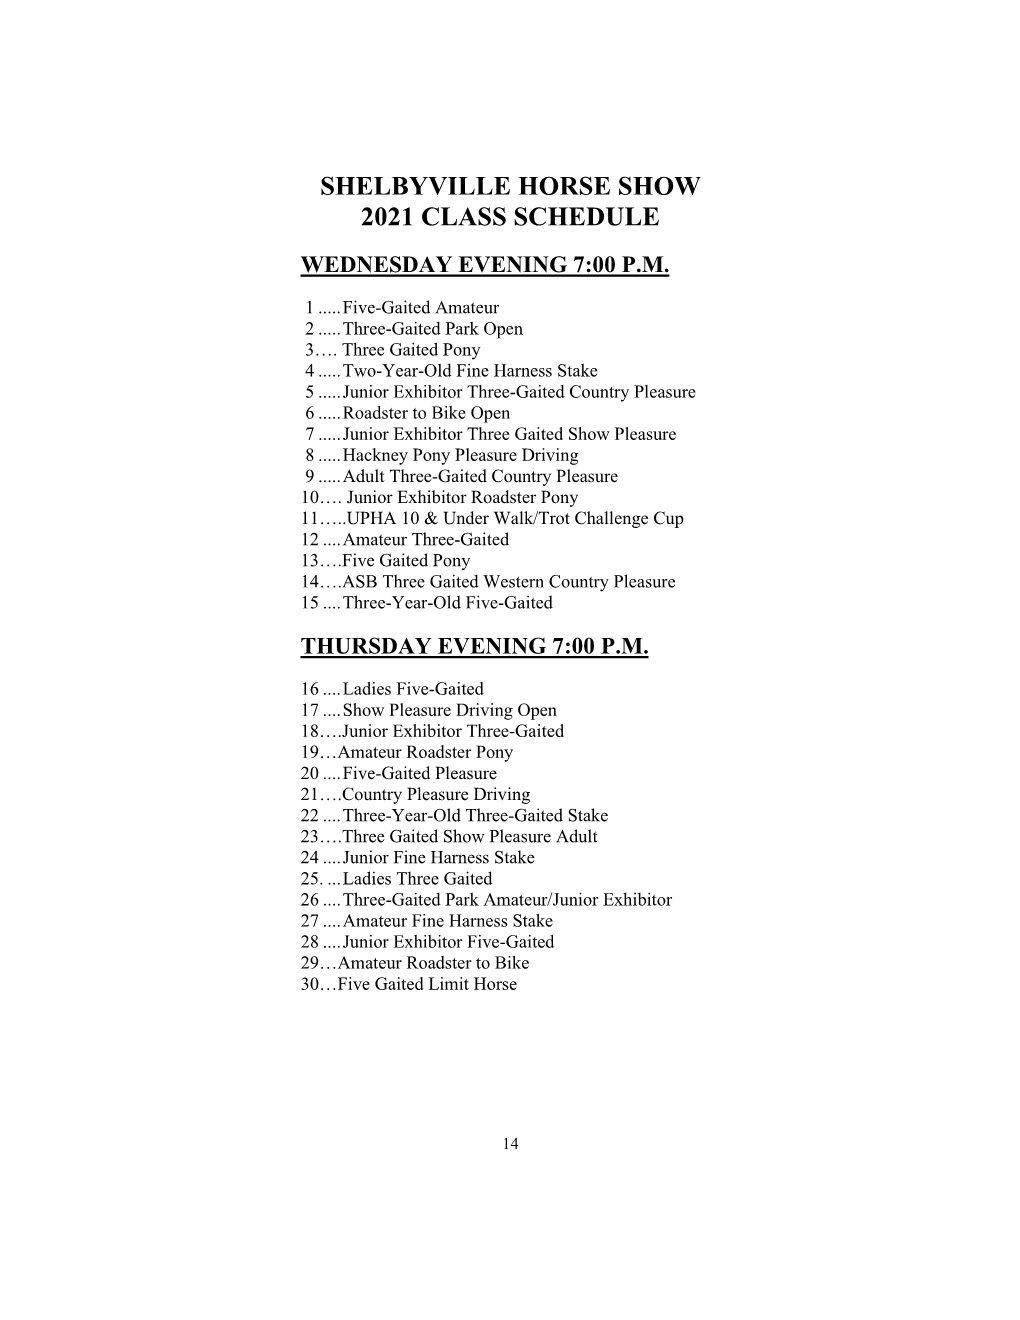 Shelbyville Prize List